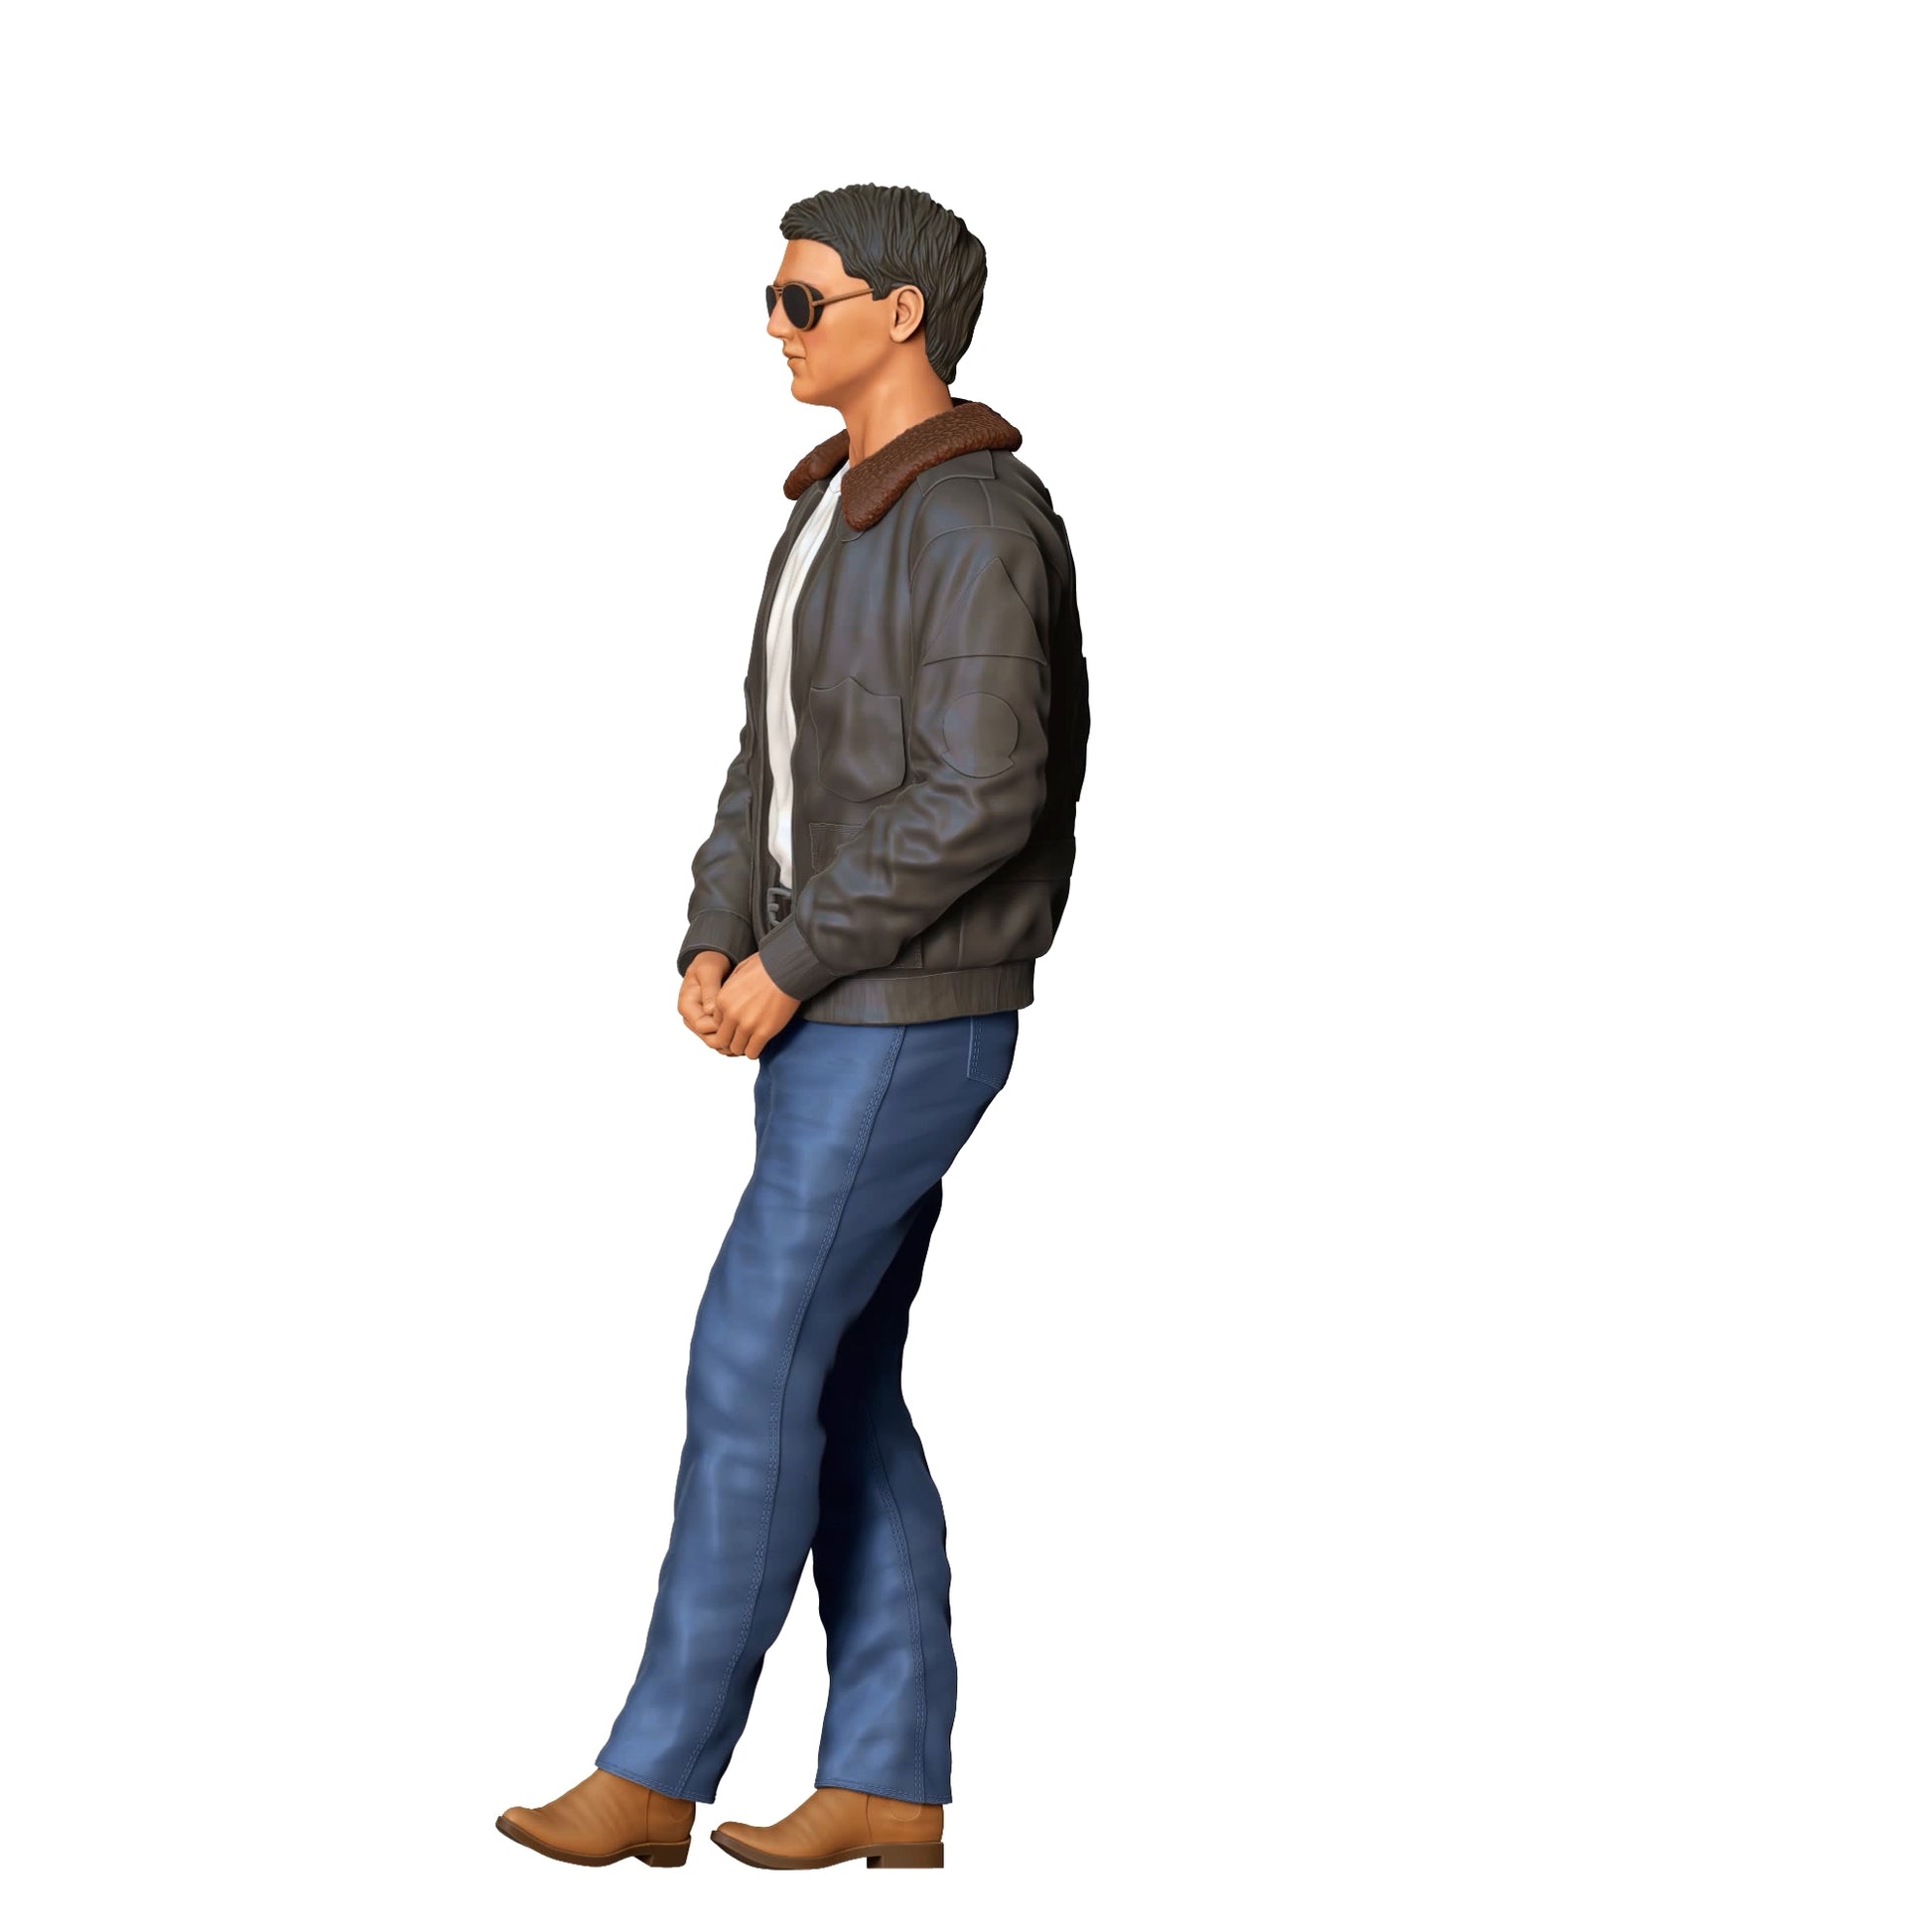 Produktfoto Diorama und Modellbau Miniatur Figur: Pilot - Mann mit Sonnenbrille und Lederjacke